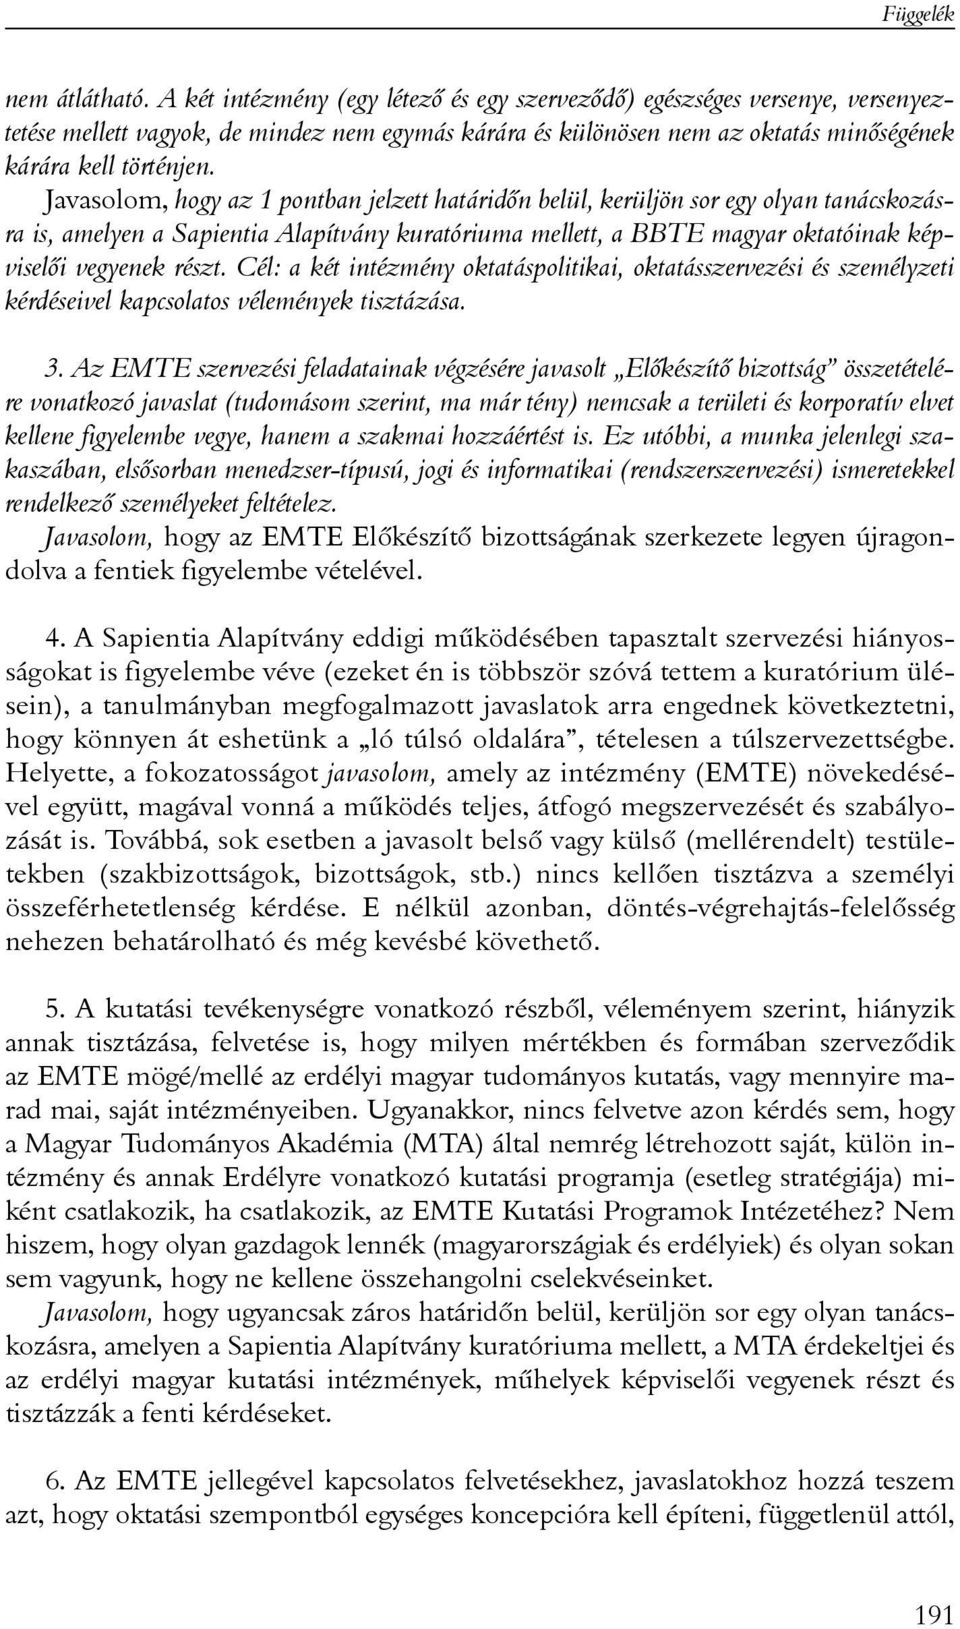 Javasolom, hogy az 1 pontban jelzett határidõn belül, kerüljön sor egy olyan tanácskozásra is, amelyen a Sapientia Alapítvány kuratóriuma mellett, a BBTE magyar oktatóinak képviselõi vegyenek részt.